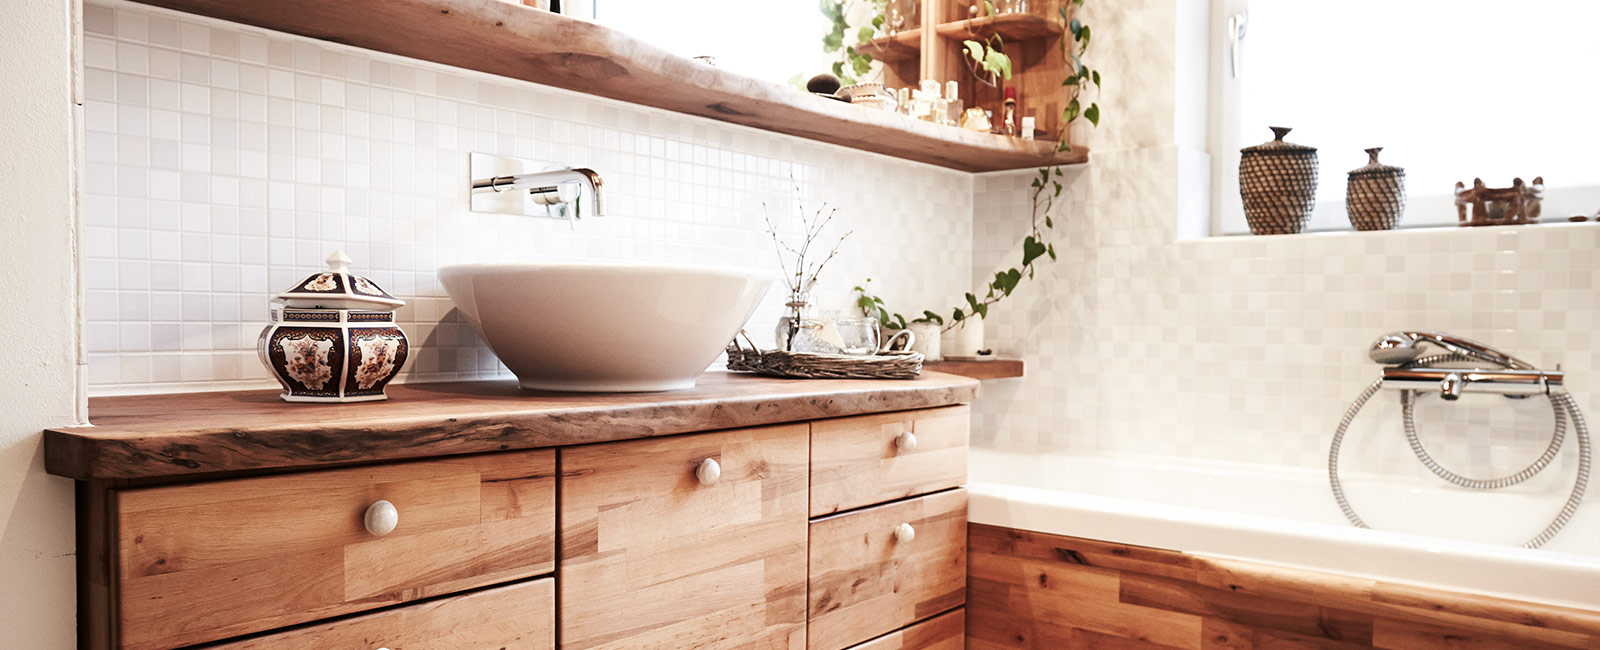 Badezimmer in elegantem Holzdesign